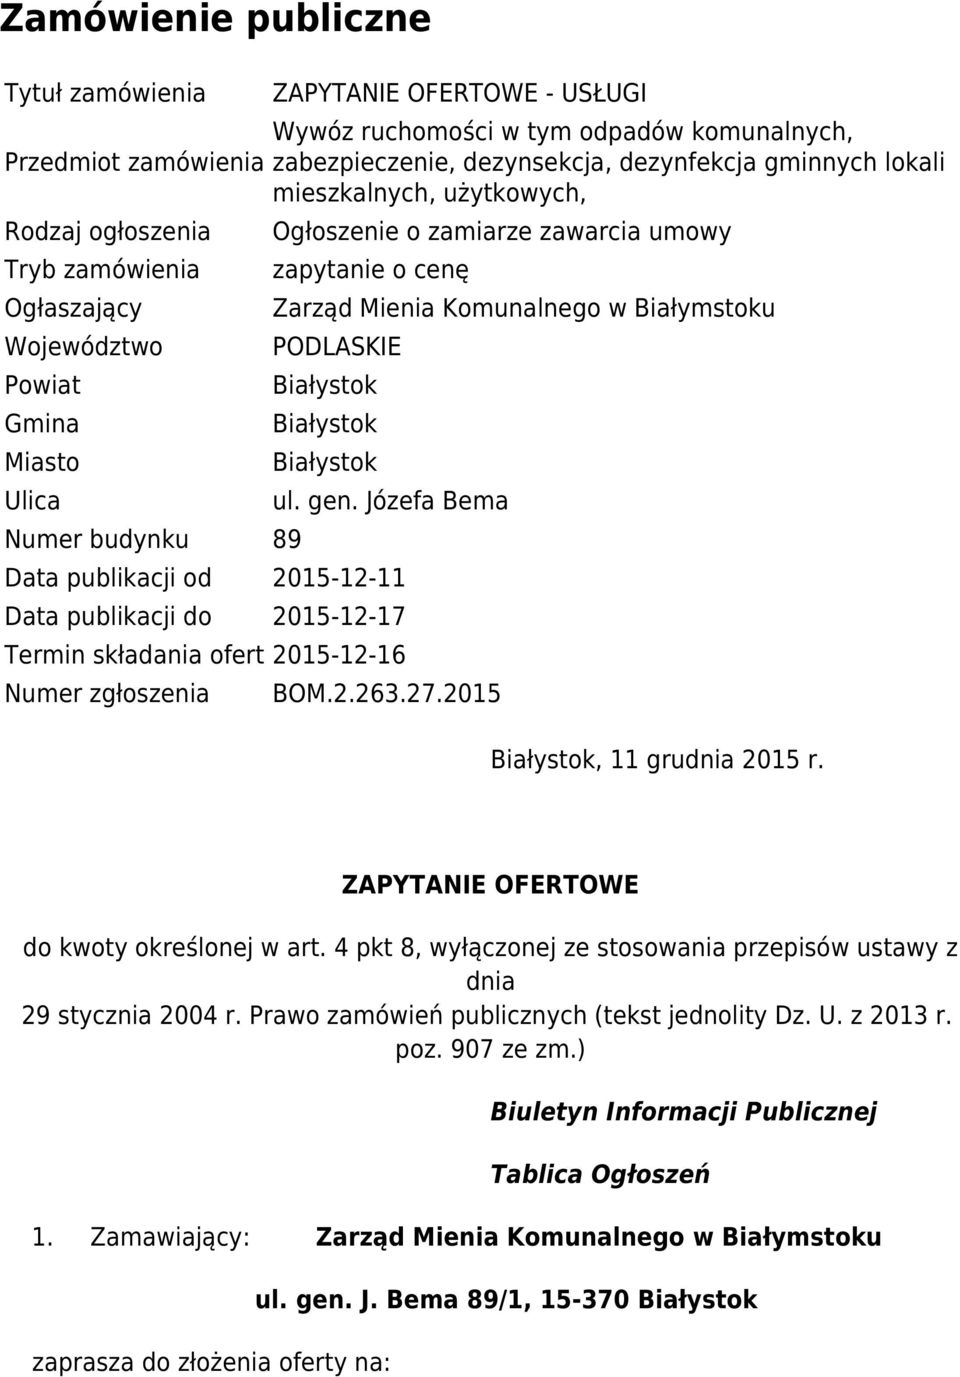 Komunalnego w Białymstoku PODLASKIE ul. gen. Józefa Bema Data publikacji od 2015-12-11 Data publikacji do 2015-12-17 Termin składania ofert 2015-12-16 Numer zgłoszenia BOM.2.263.27.